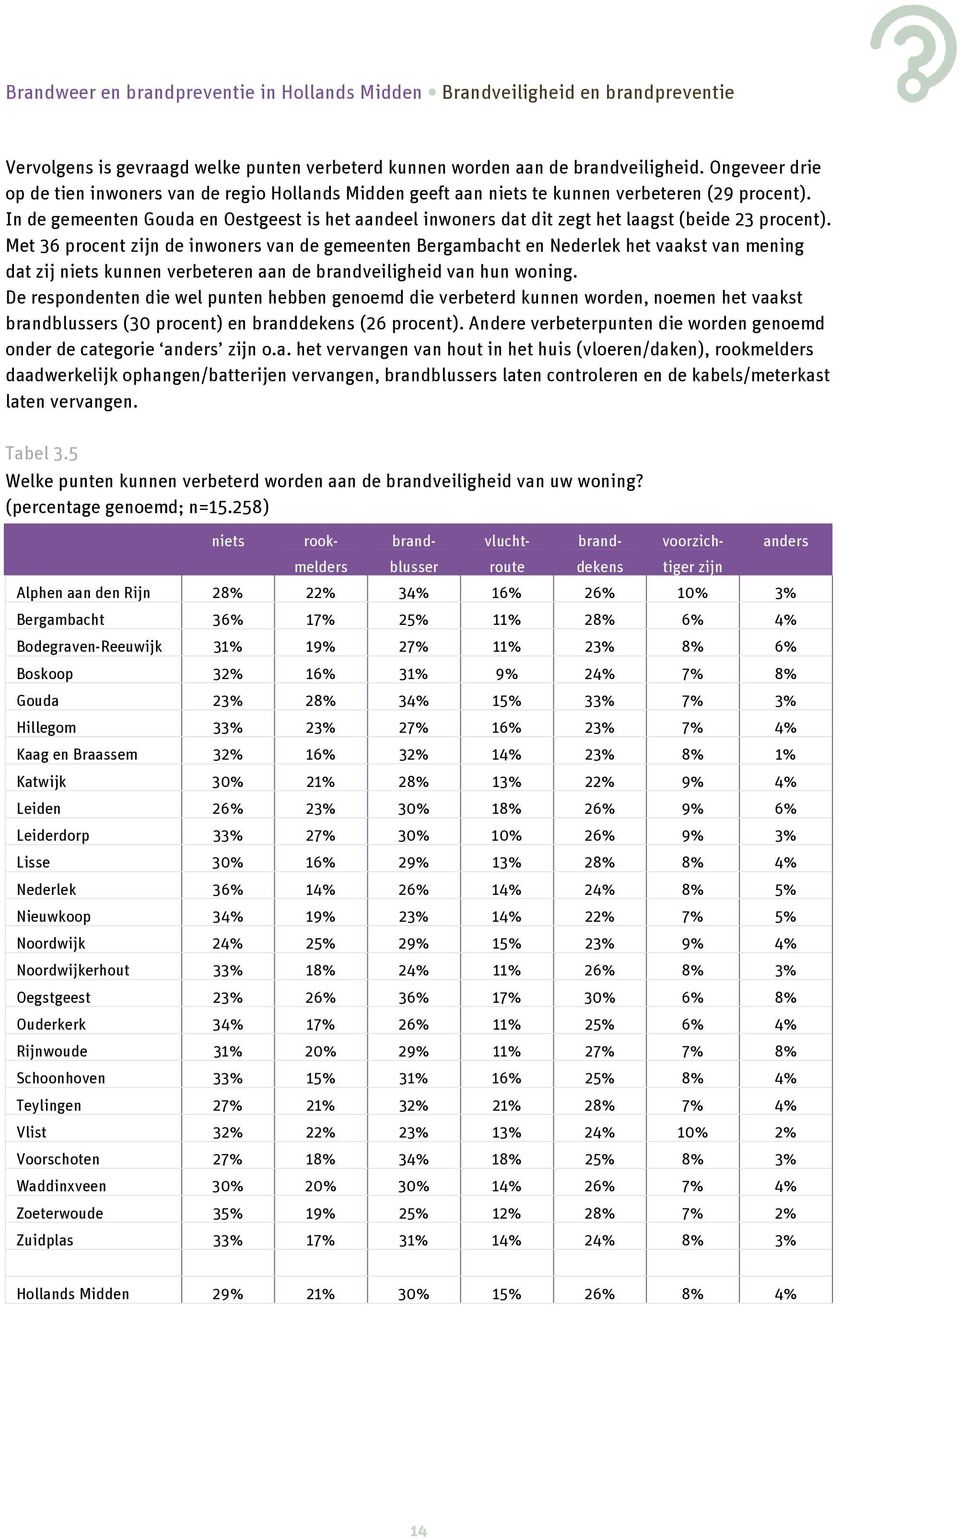 In de gemeenten Gouda en Oestgeest is het aandeel inwoners dat dit zegt het laagst (beide 23 procent).